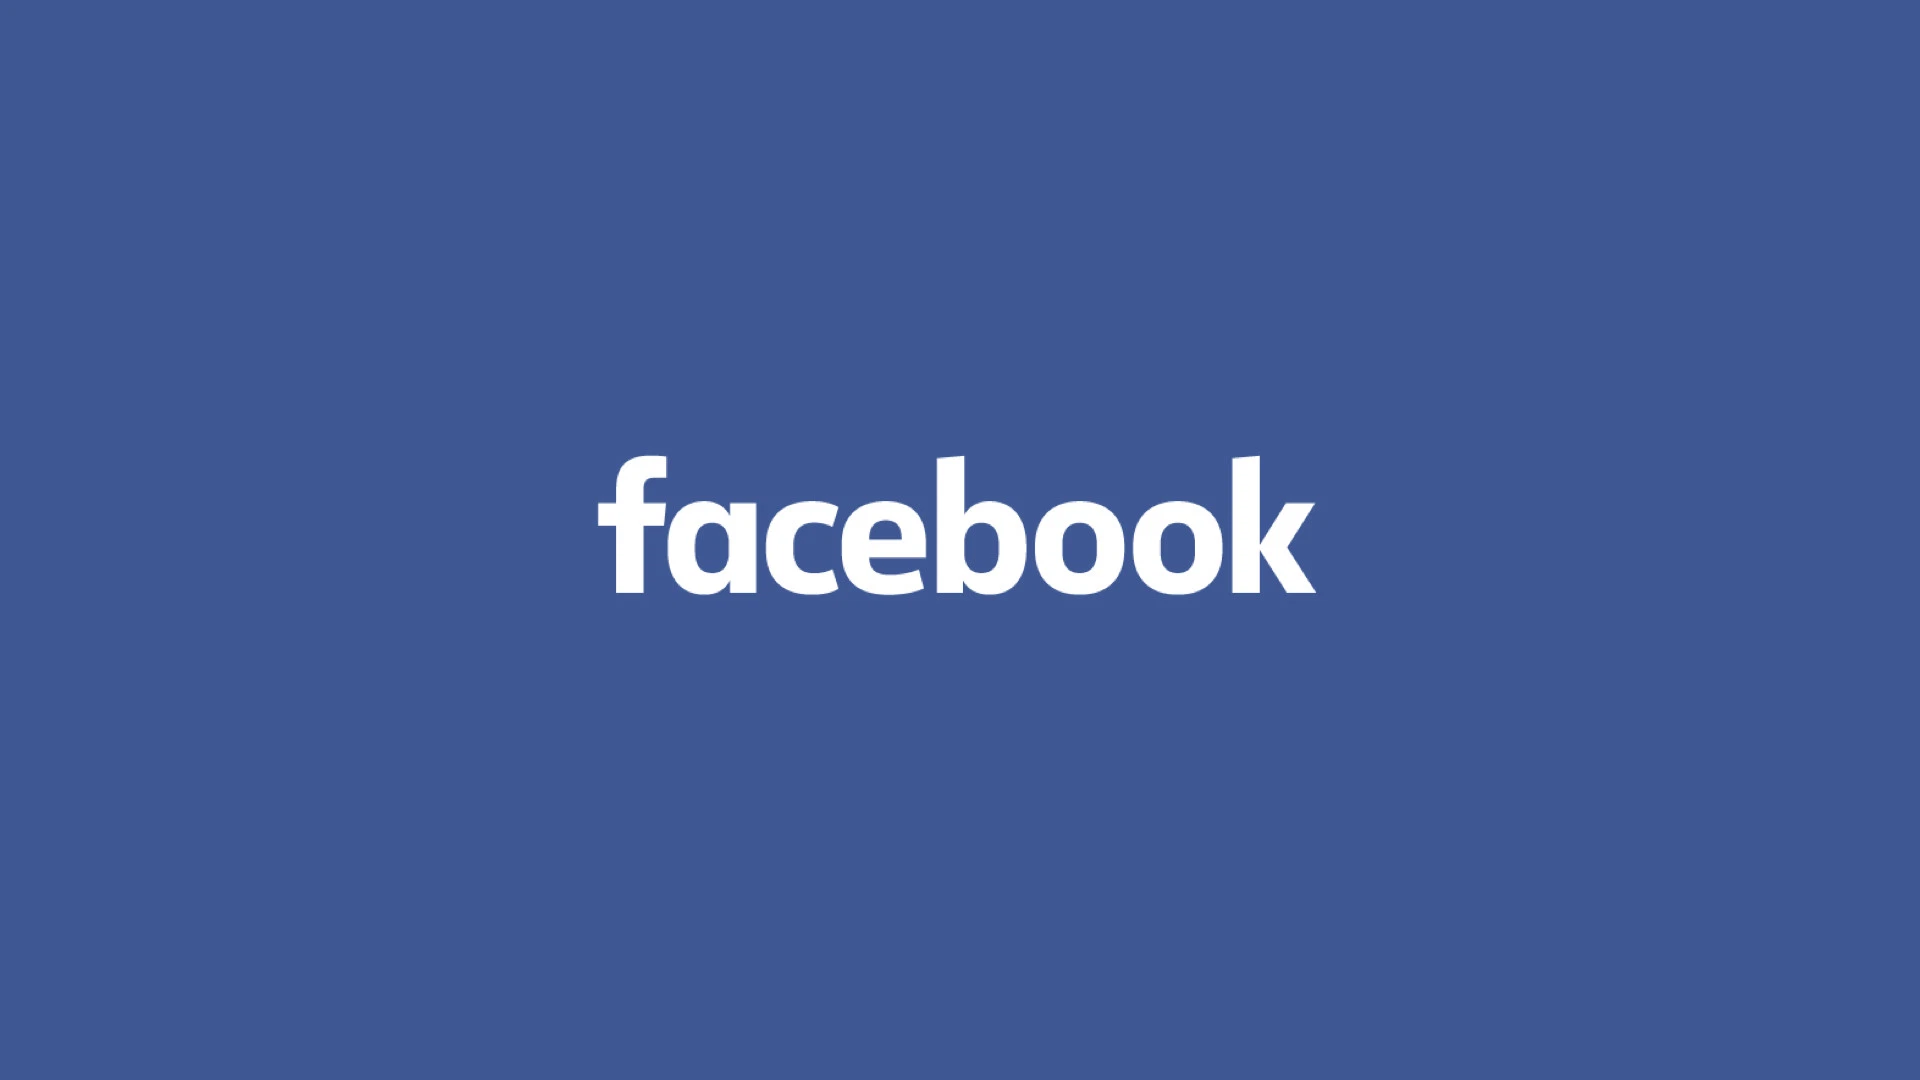  Facebook-u akuzohet për anësi në punësim kundër personave me ngjyrë 